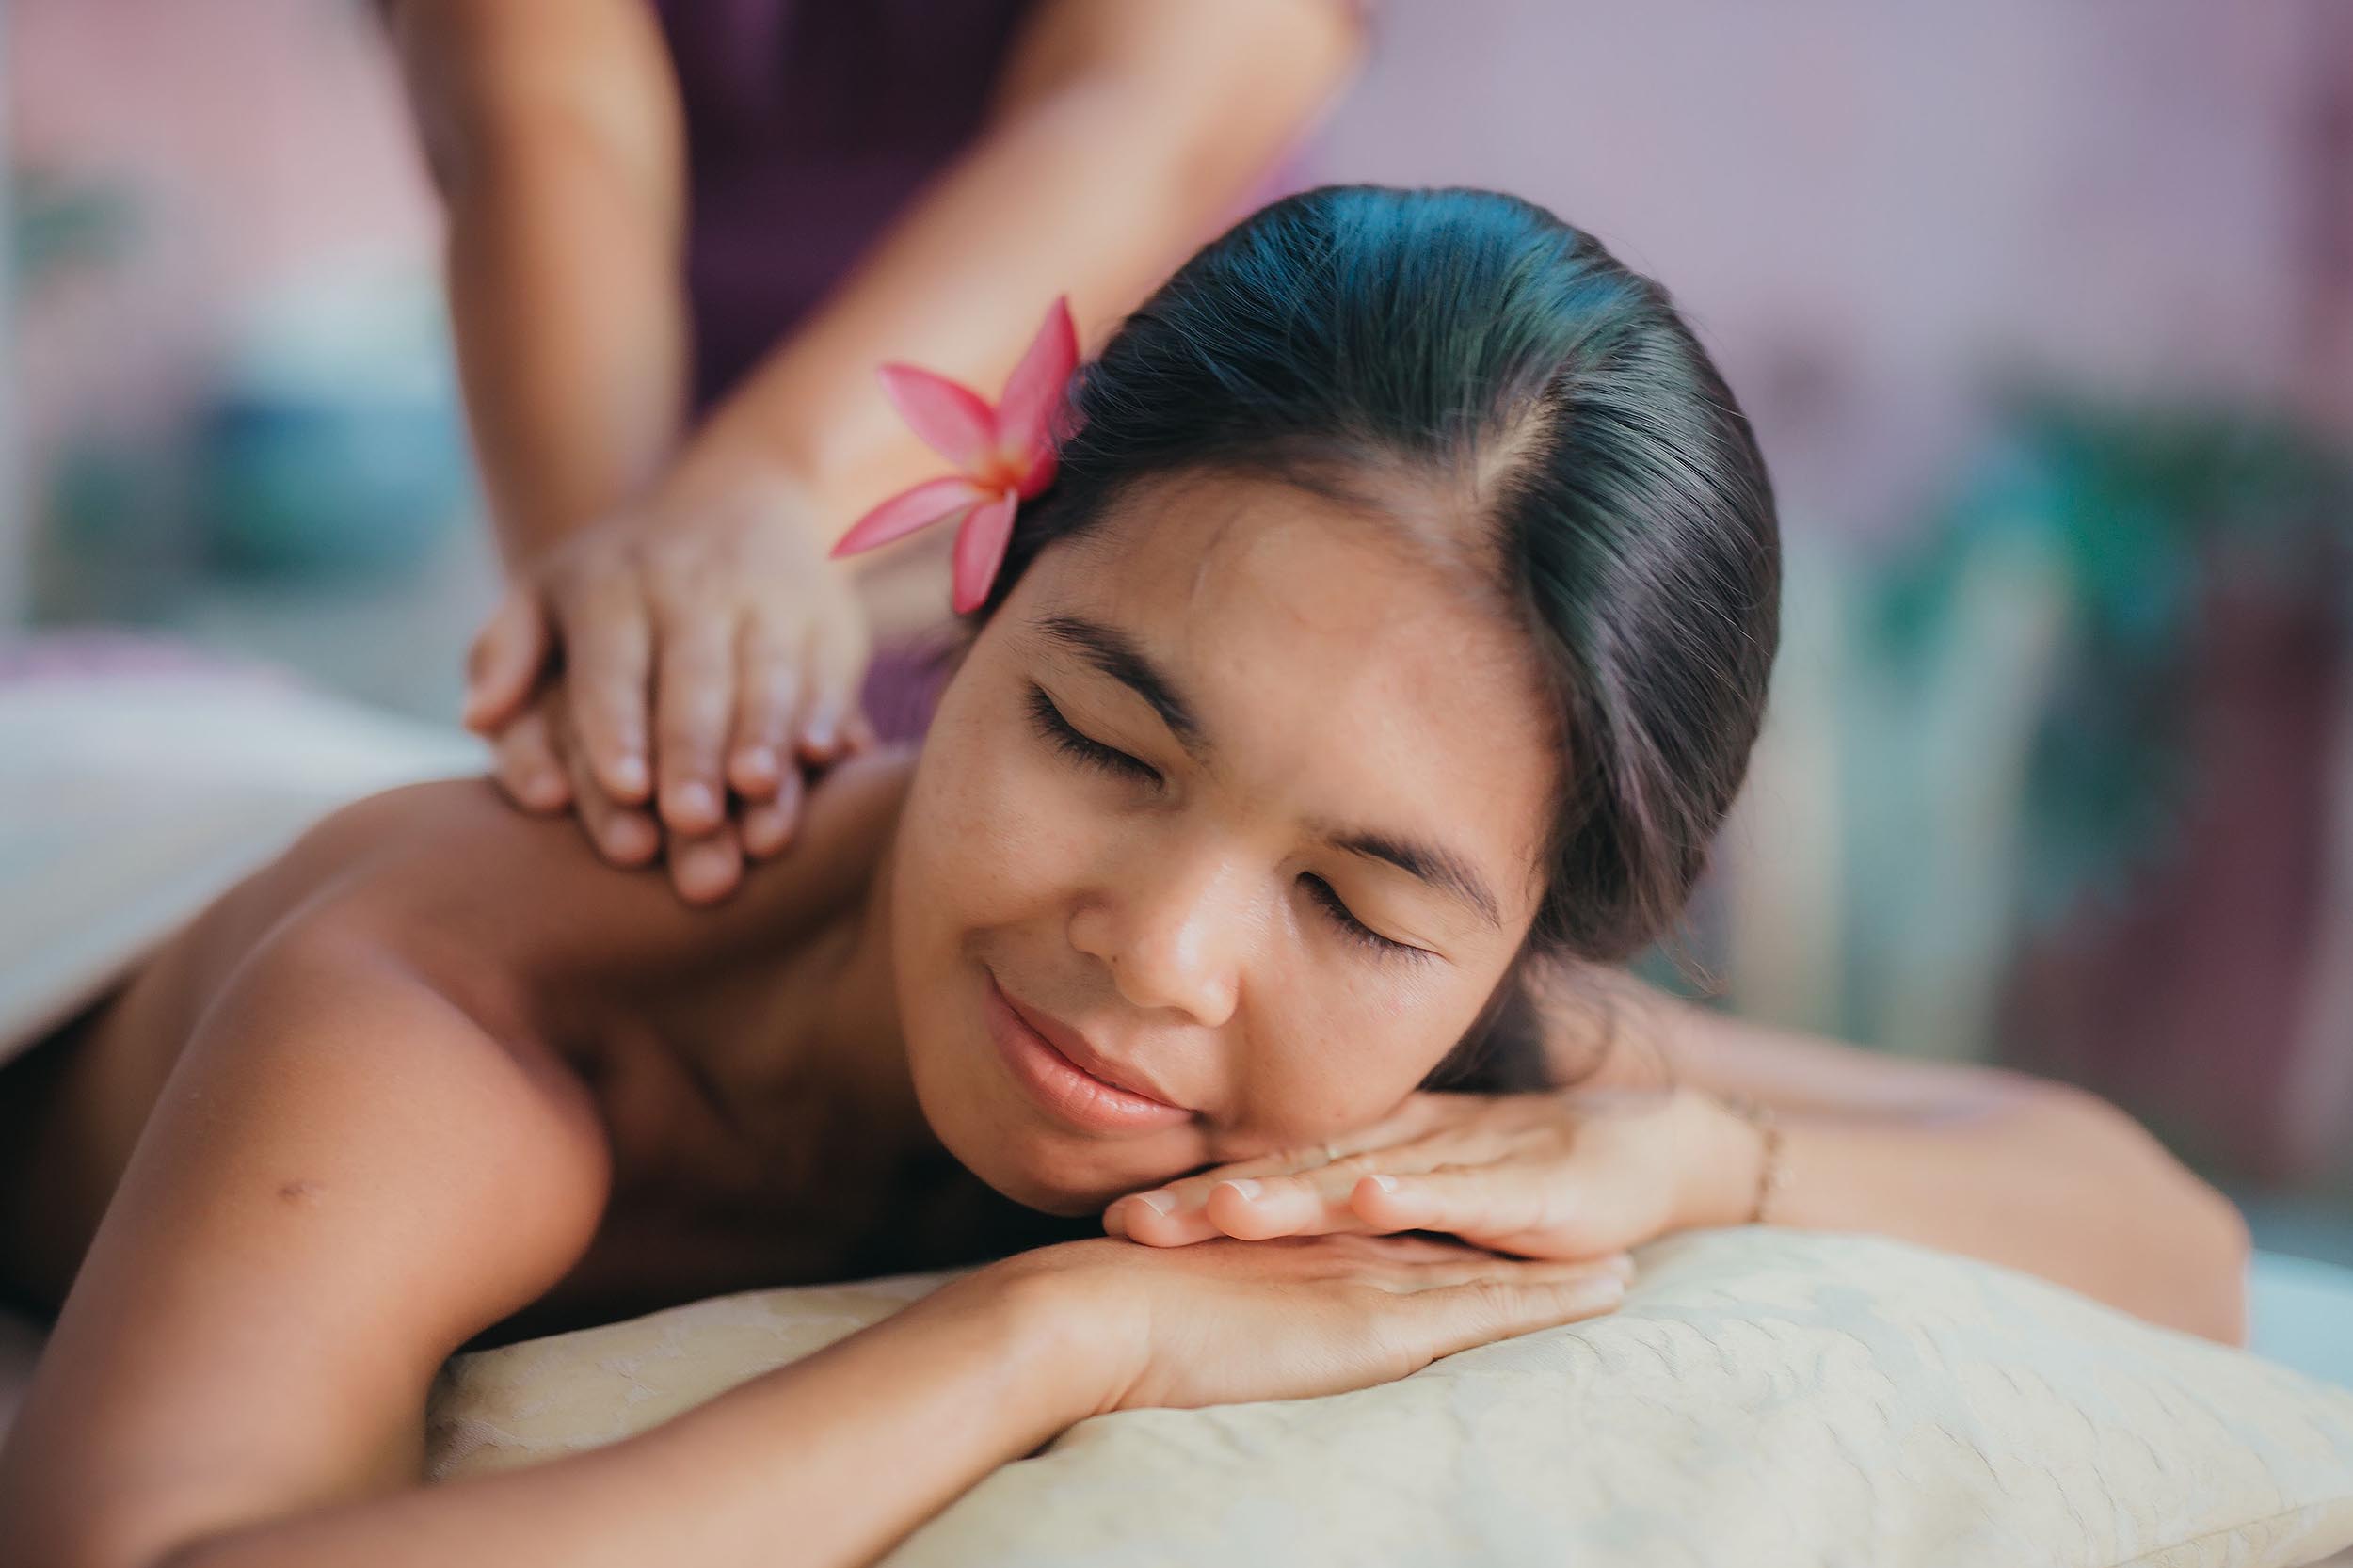 Thai Massagen in Thailand - Alles was Du wissen musst üner Wirkung, Massageformen und Preise